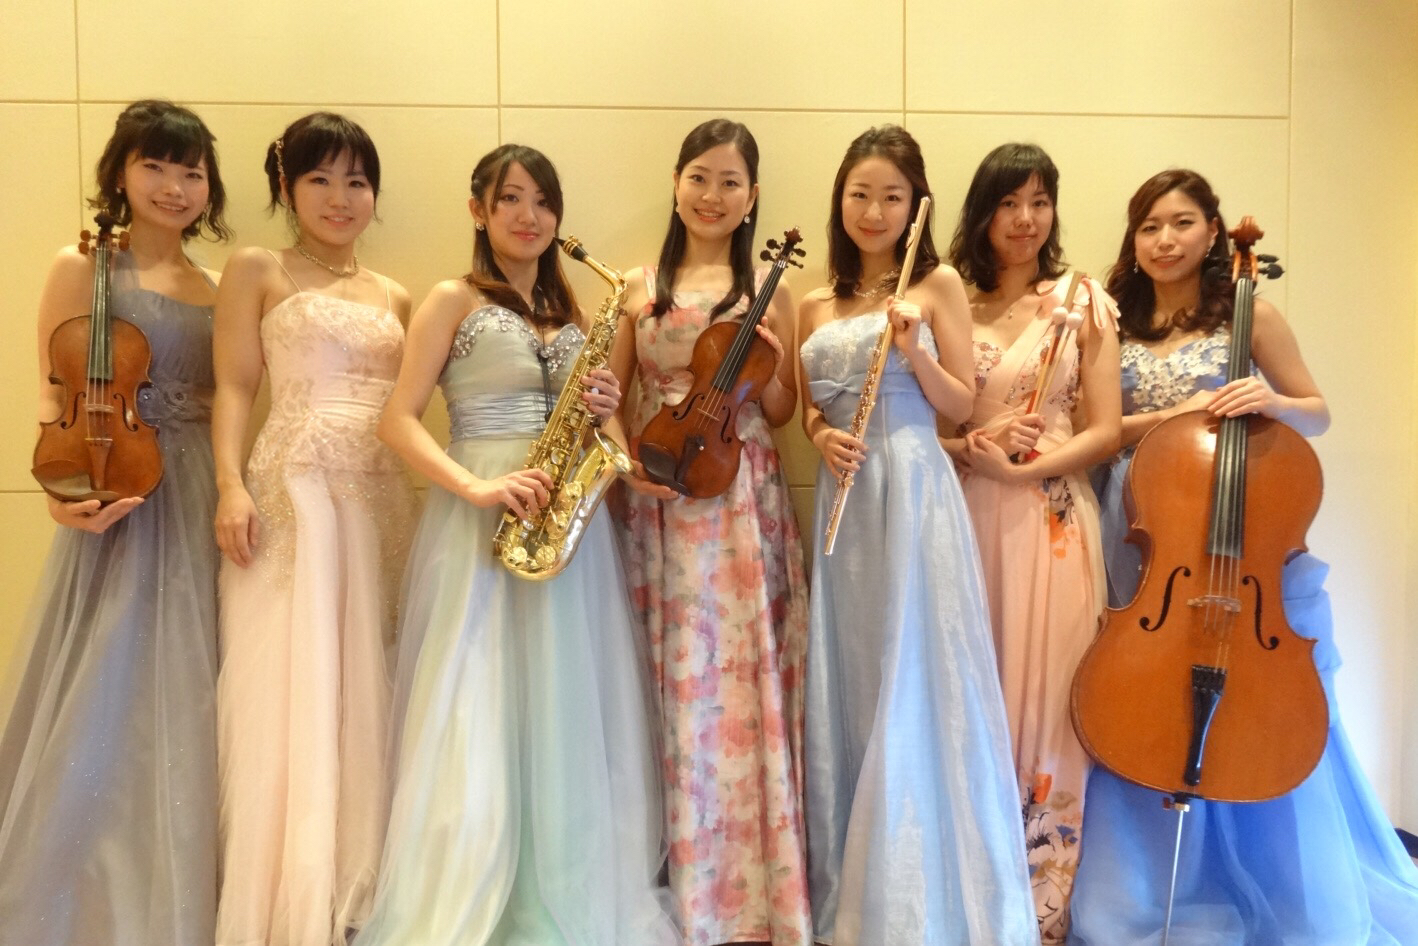 美人演奏家によるミニオーケストラは華があり人気があります